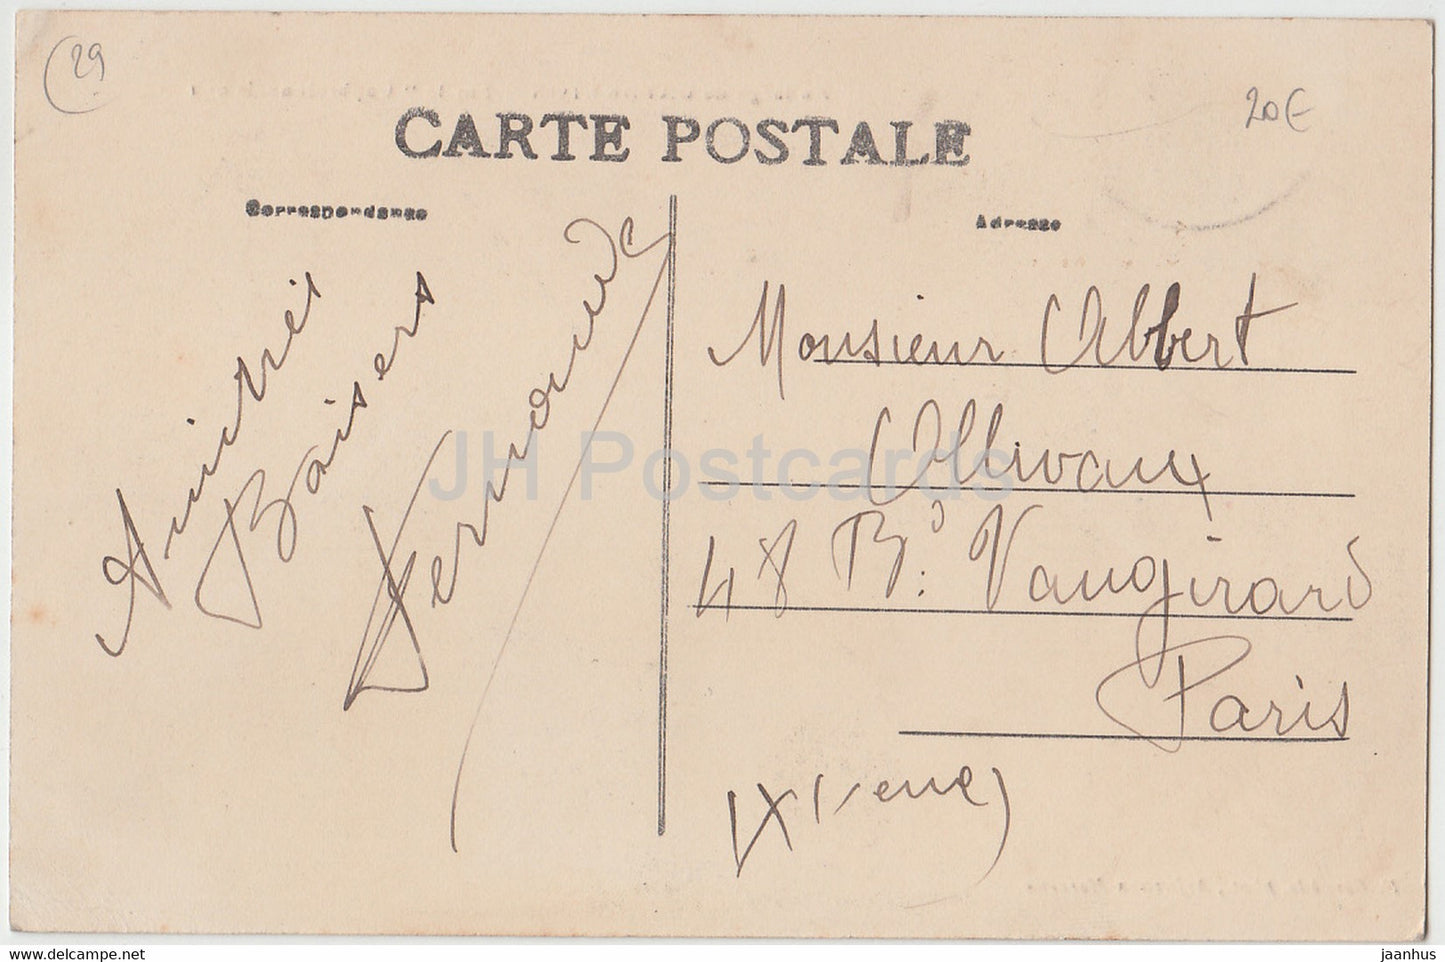 Au large de Capbreton - Sur le Capbretonnais - Schiff - alte Postkarte - Frankreich - gebraucht